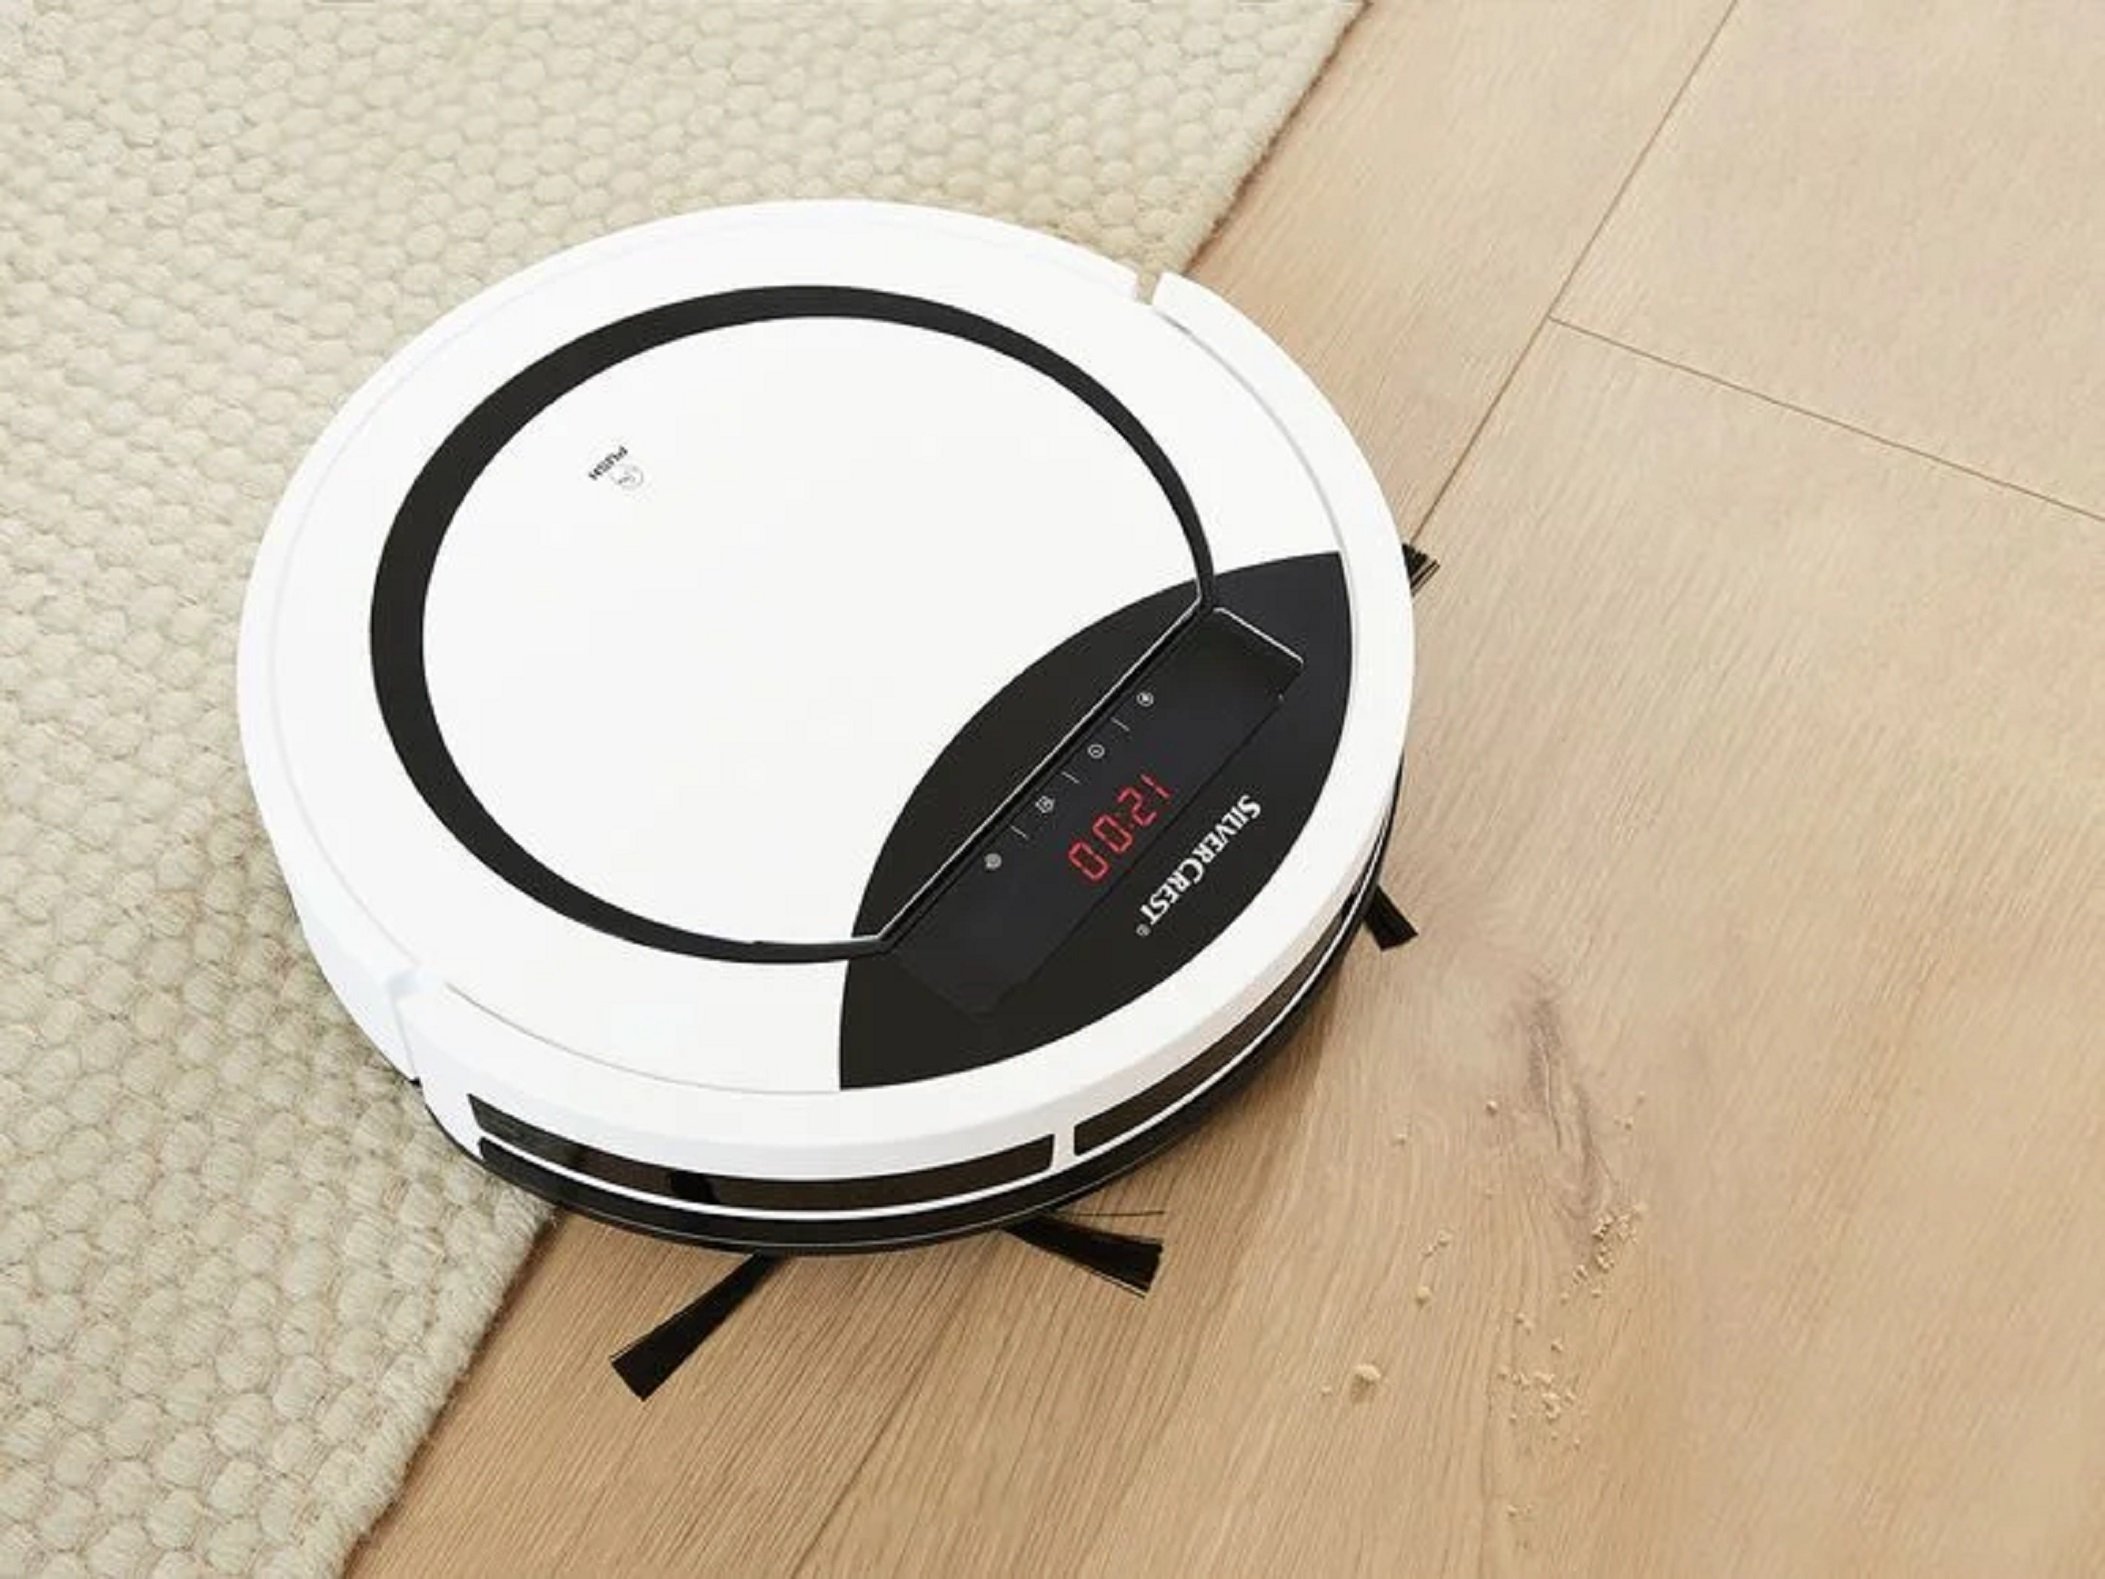 Lidl hace temblar de nuevo a Roomba con su nuevo robot aspirador